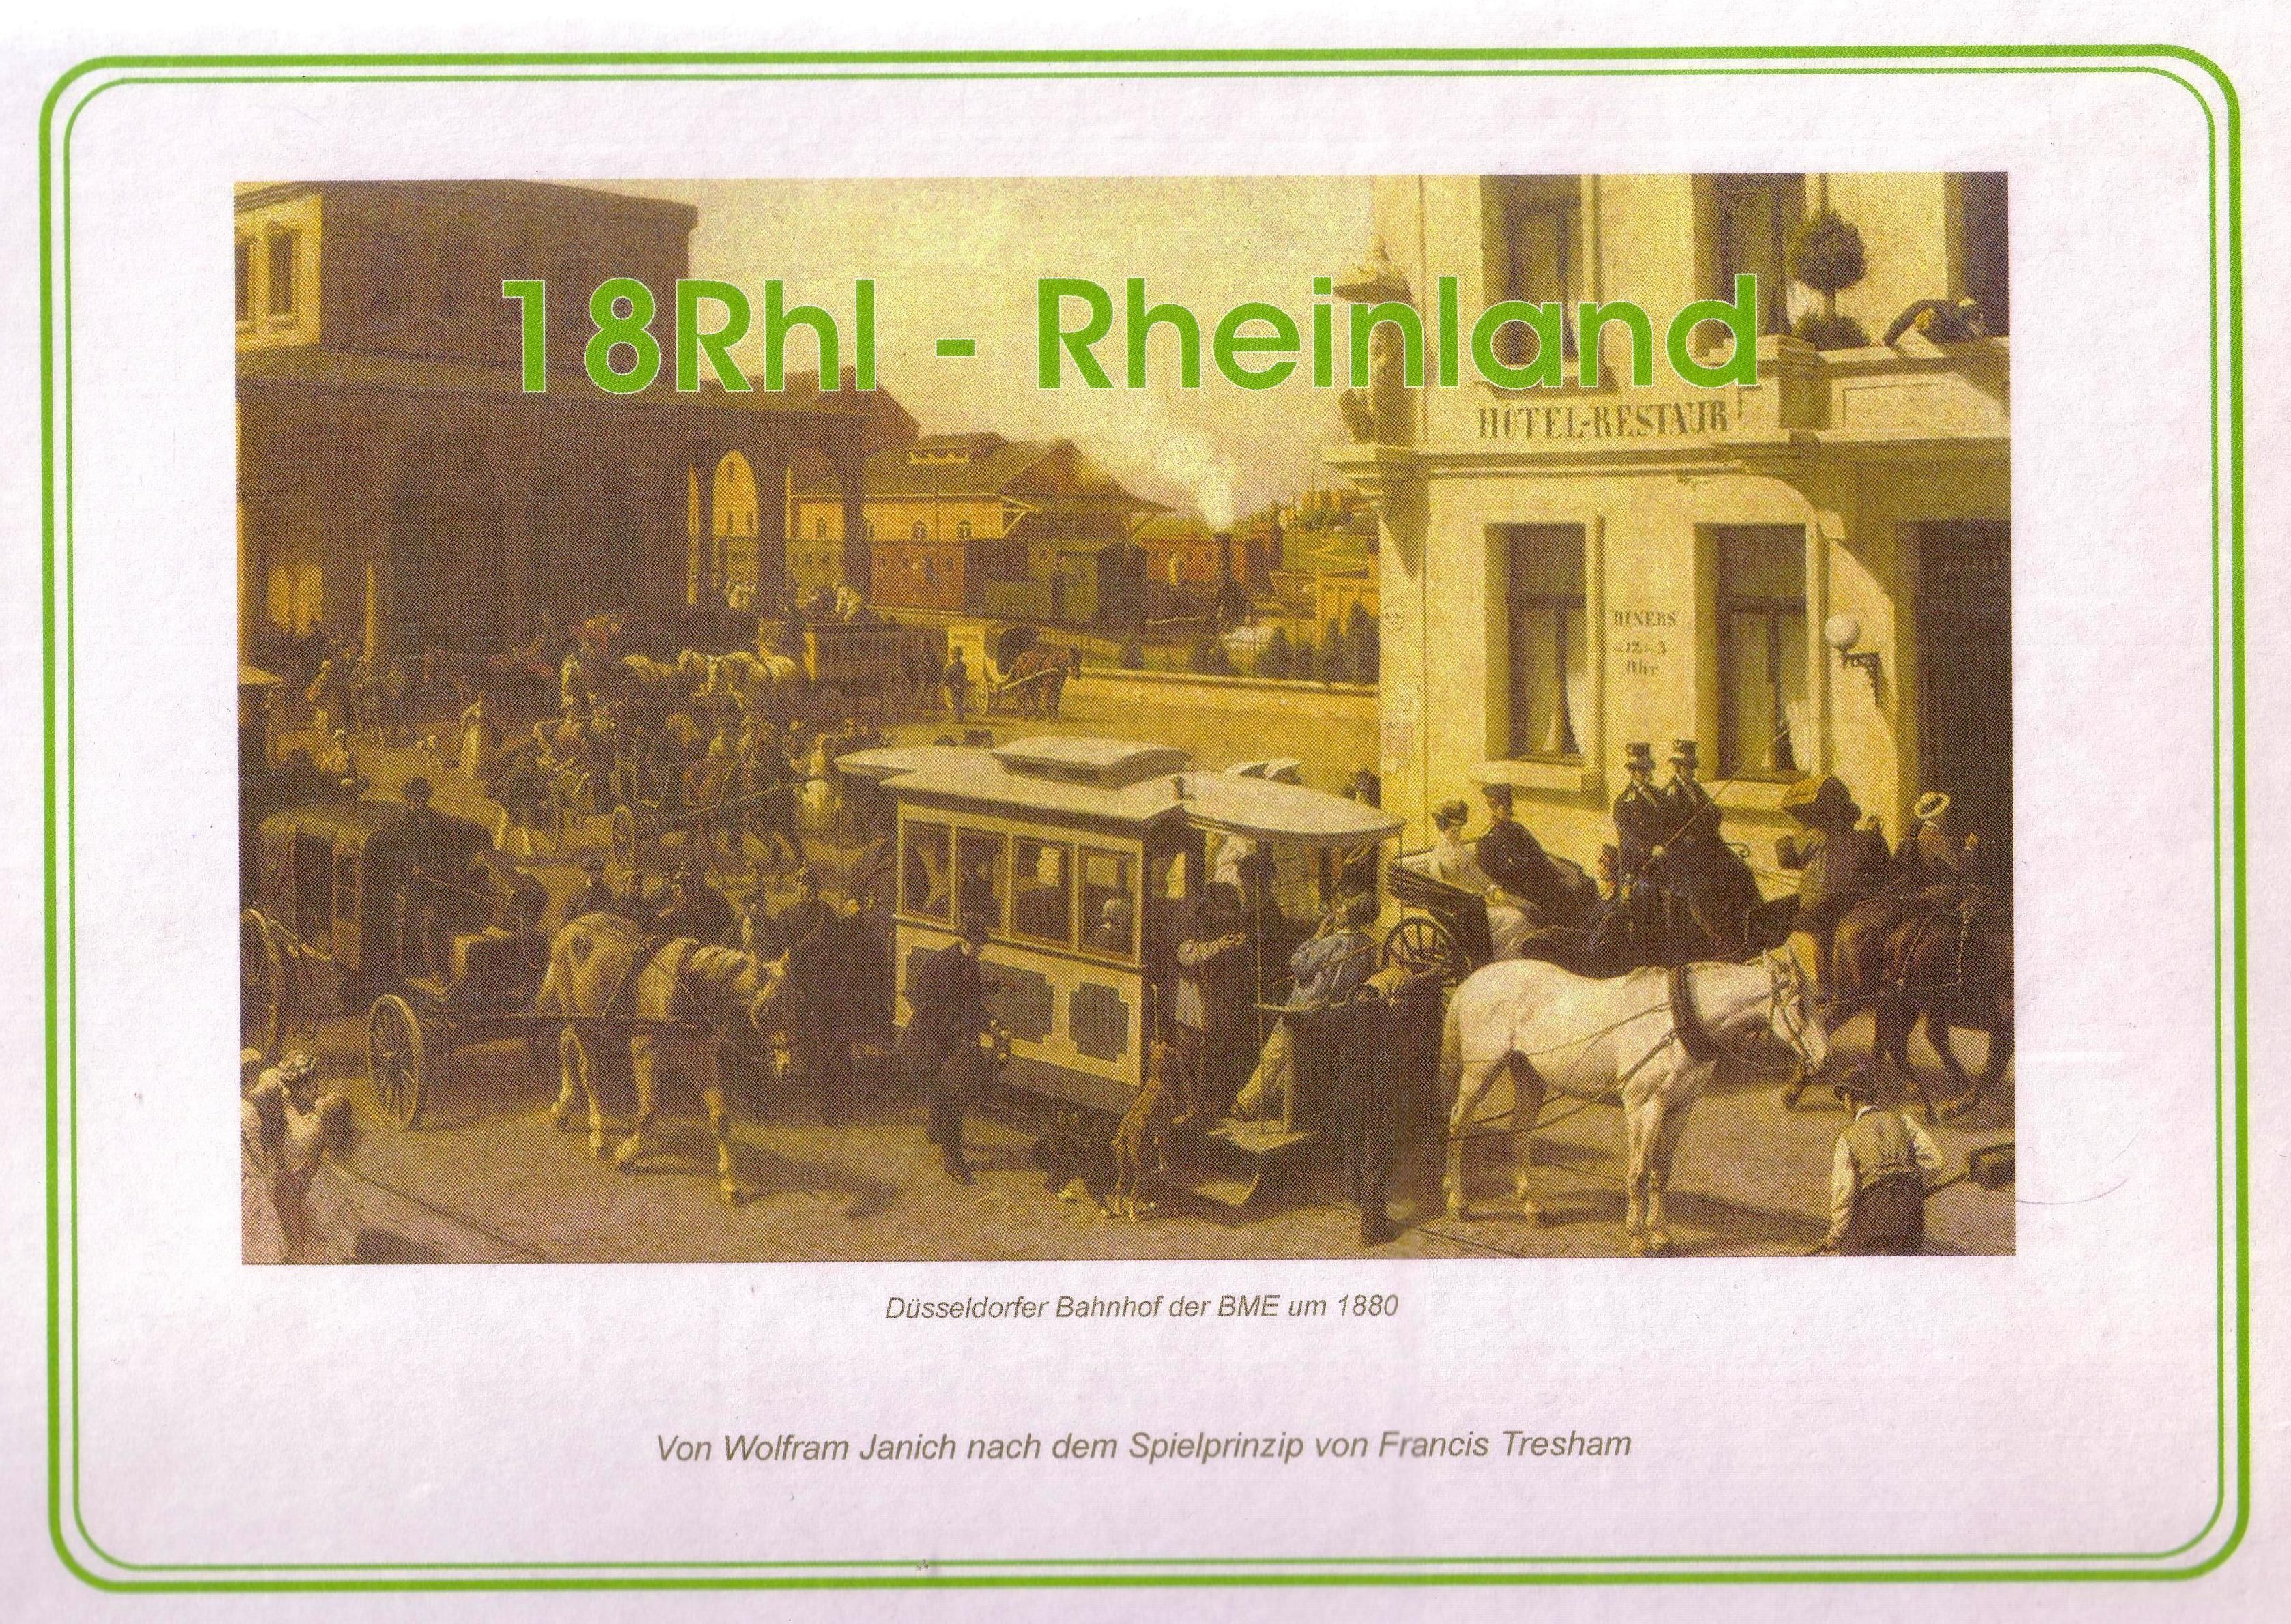 18Rhl: Rhineland